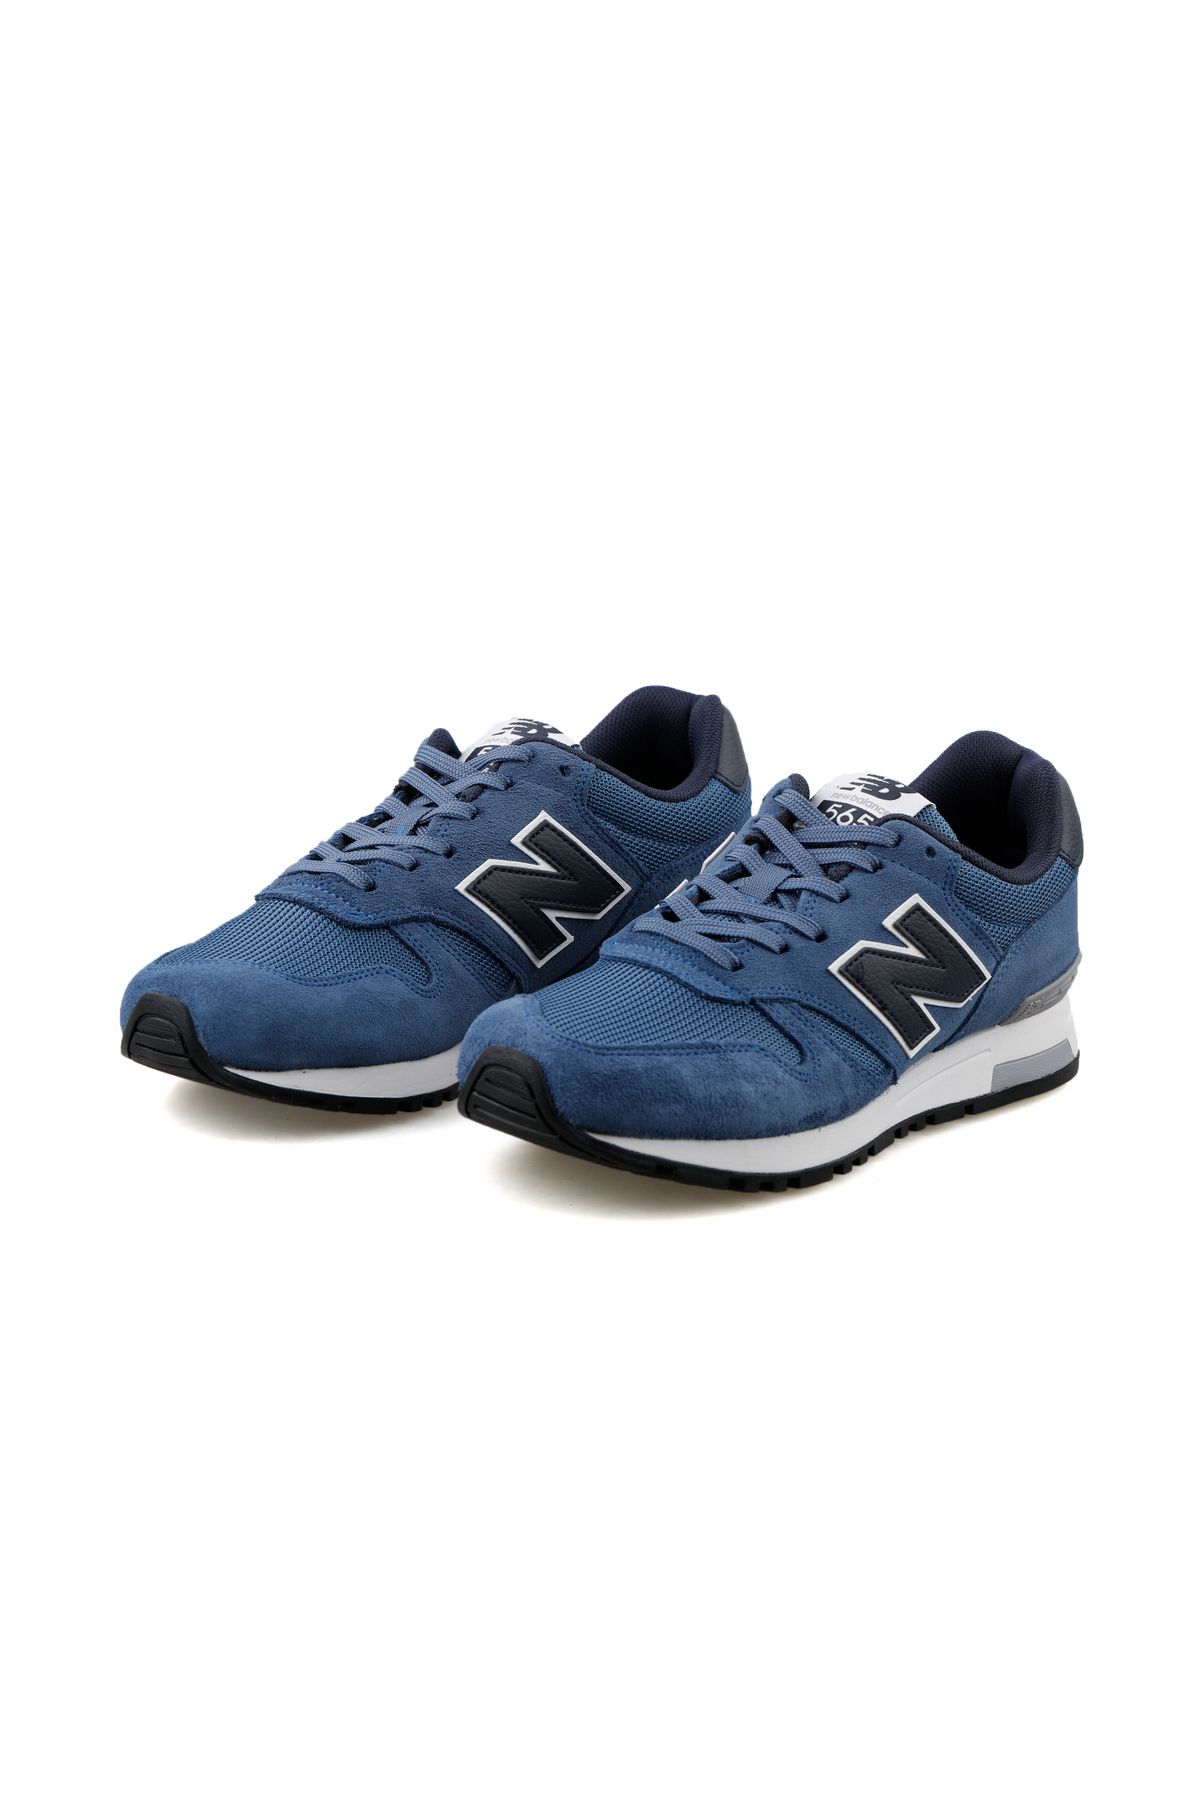 New Balance 565 Lifestyle Erkek Günlük Casual Spor Ayakkabı Sneaker